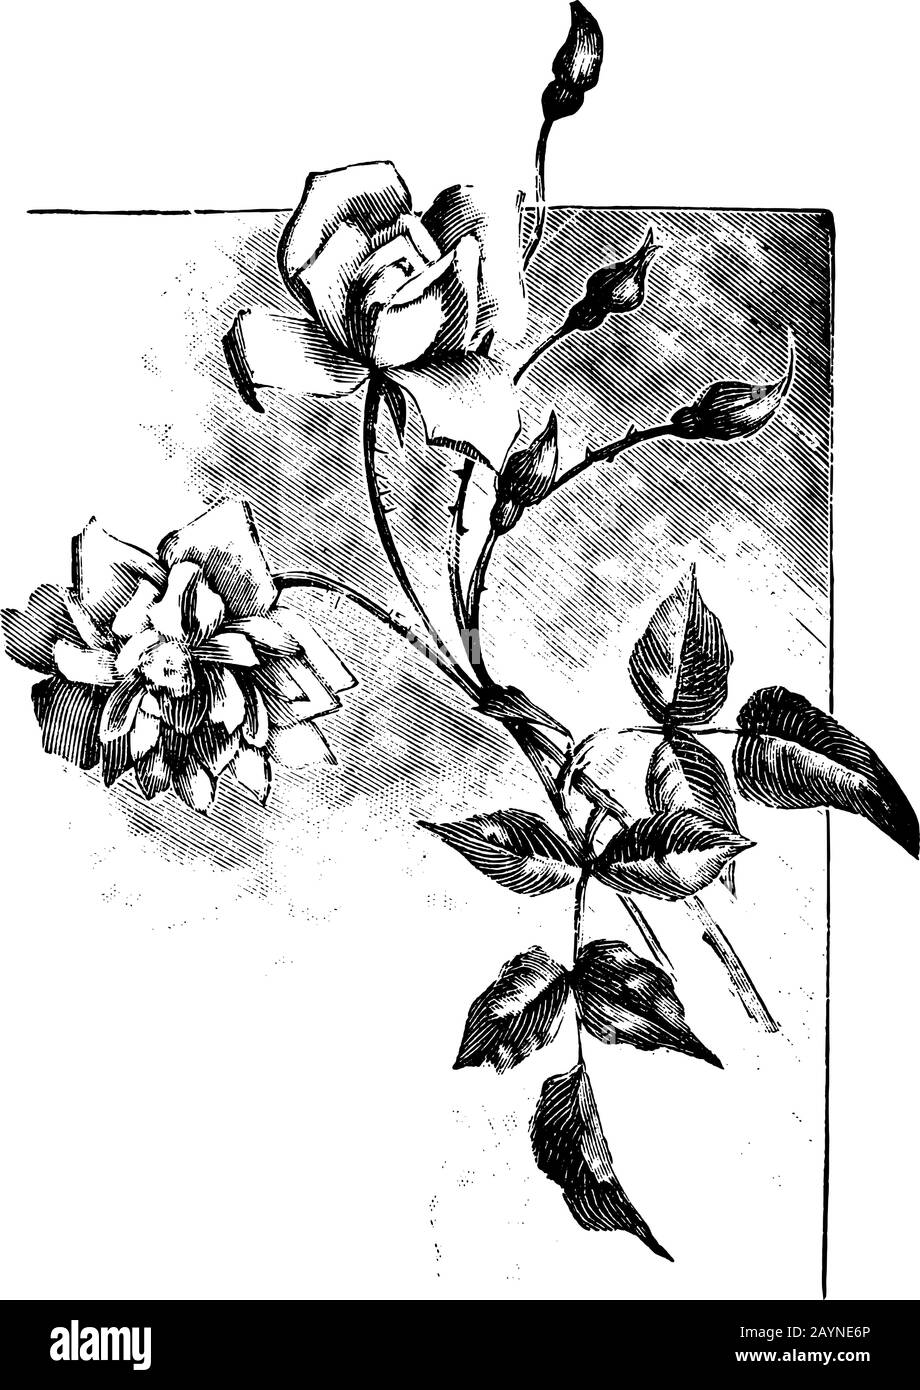 Antica linea d'arte vintage illustrazione, incisione o disegno a mano di bella rosa fiore. Illustrazione Vettoriale